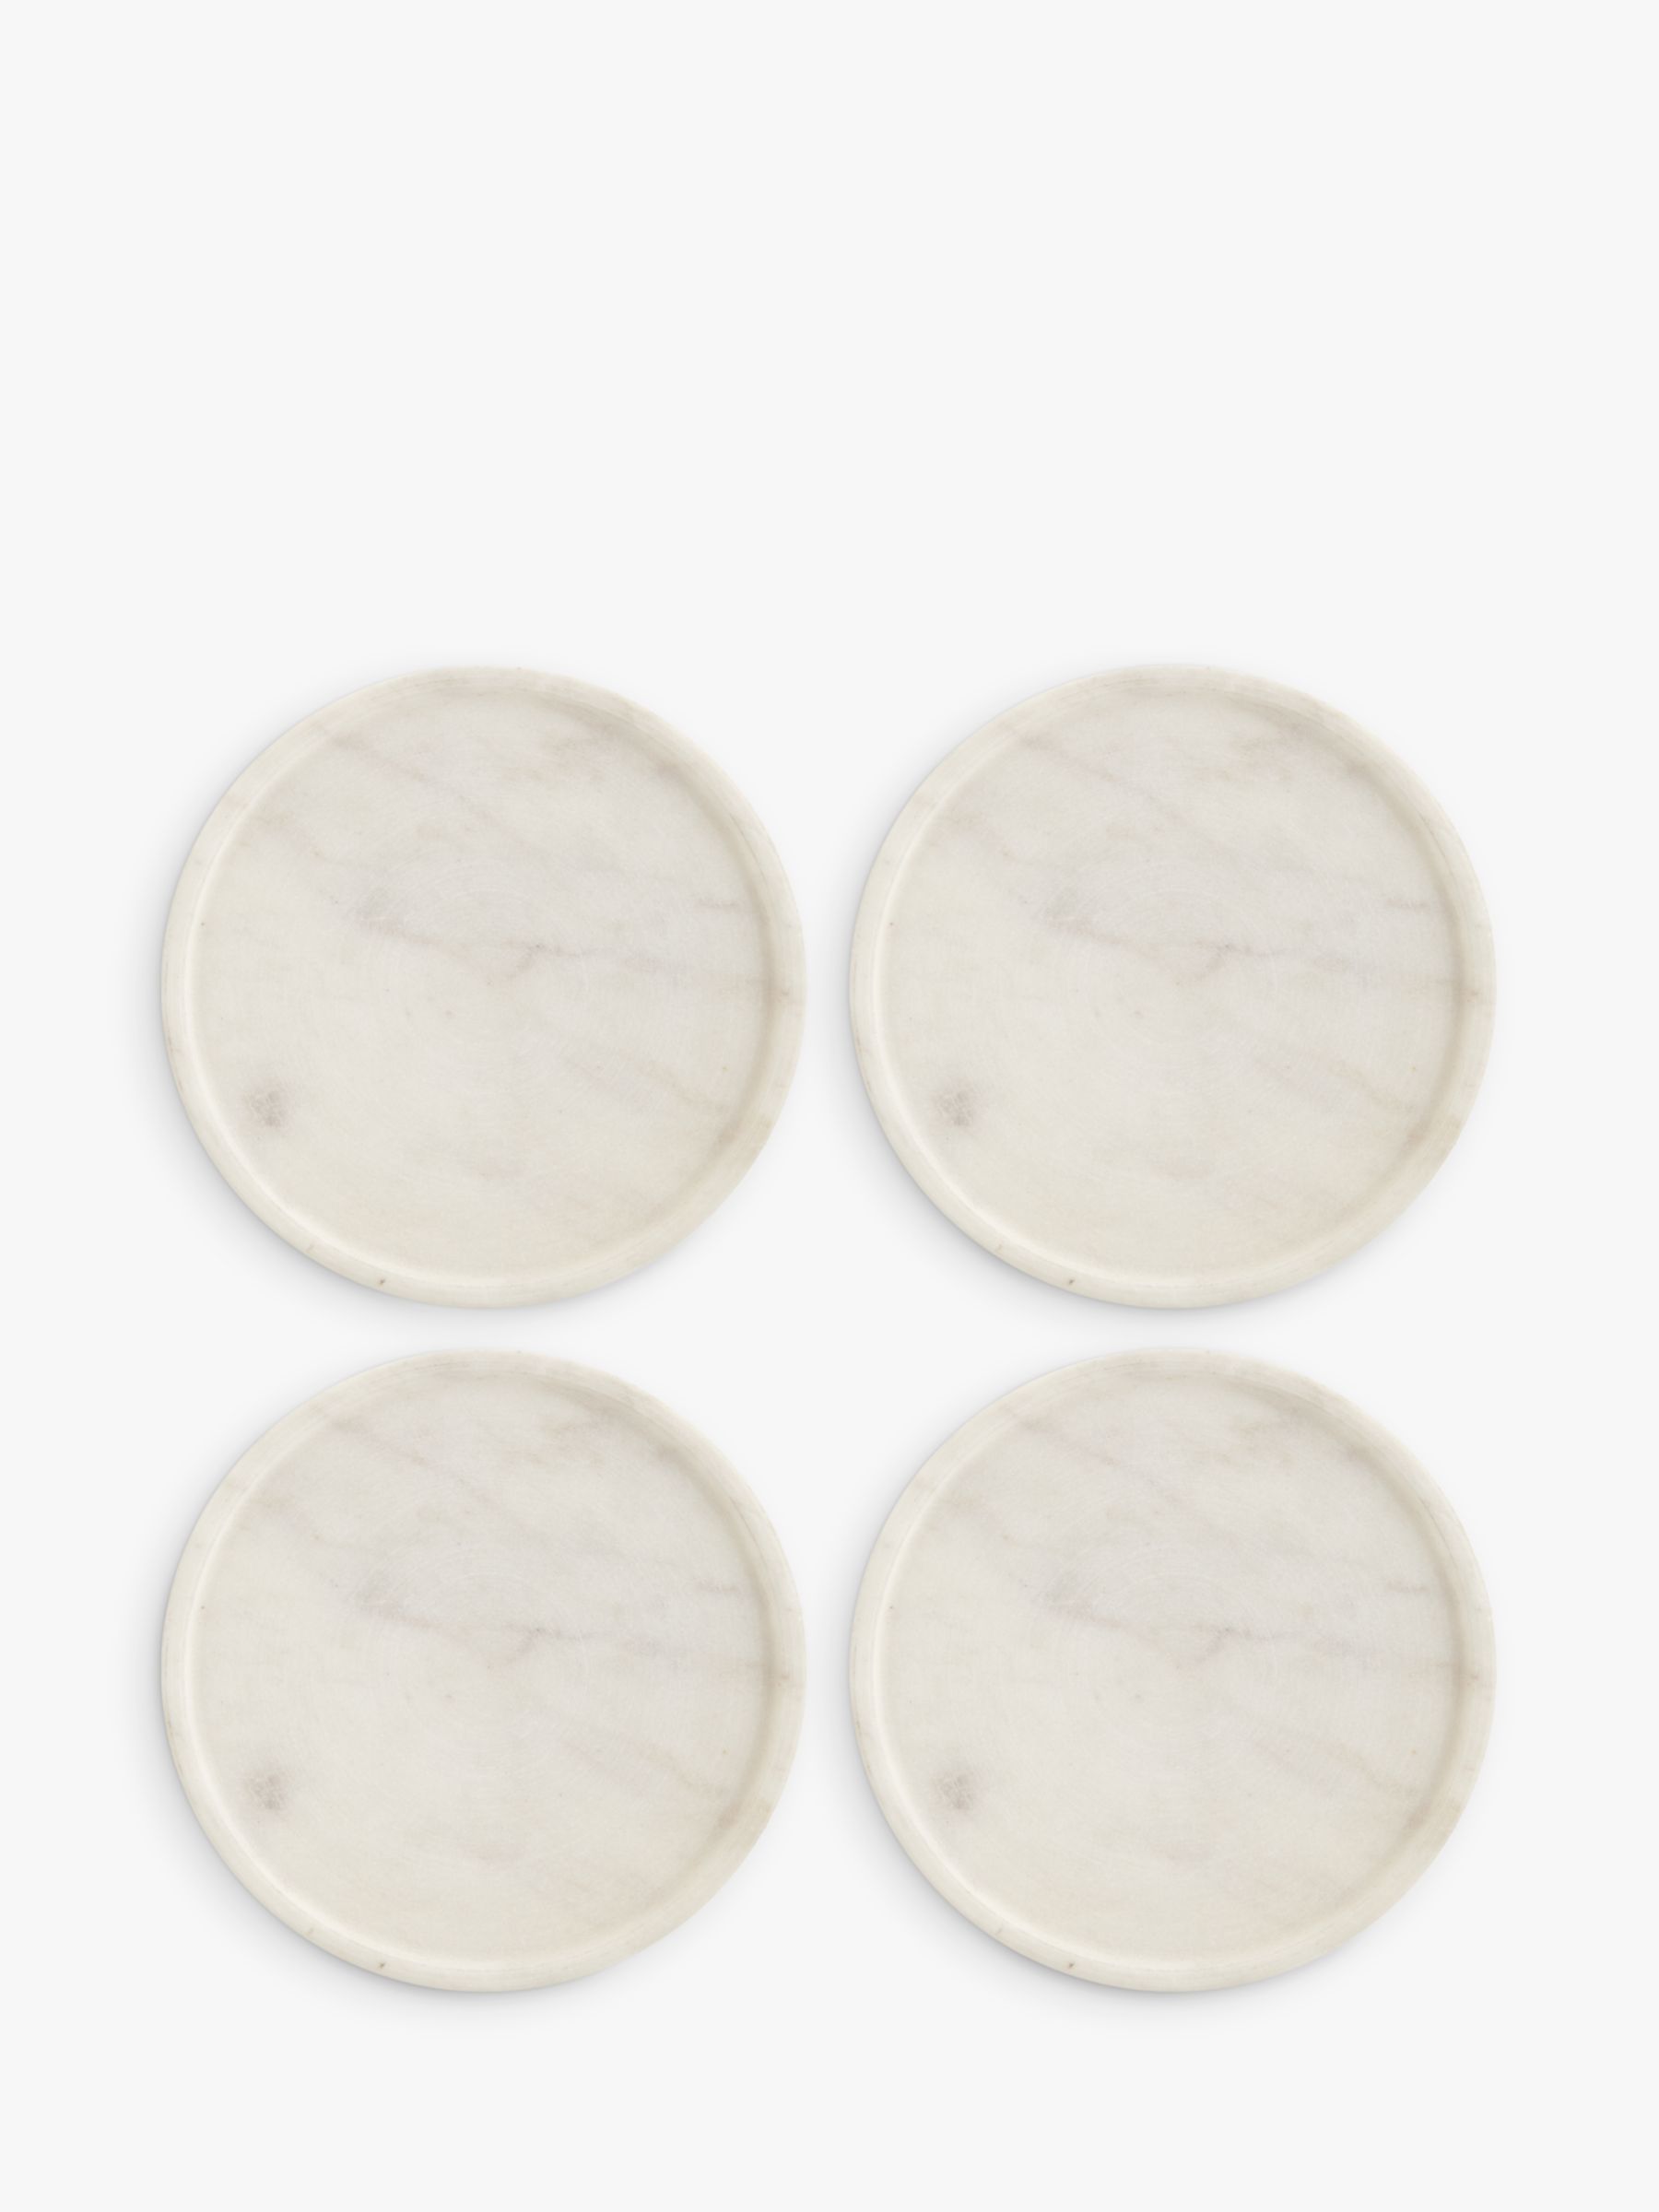 John Lewis Coasters, Set of 4, White